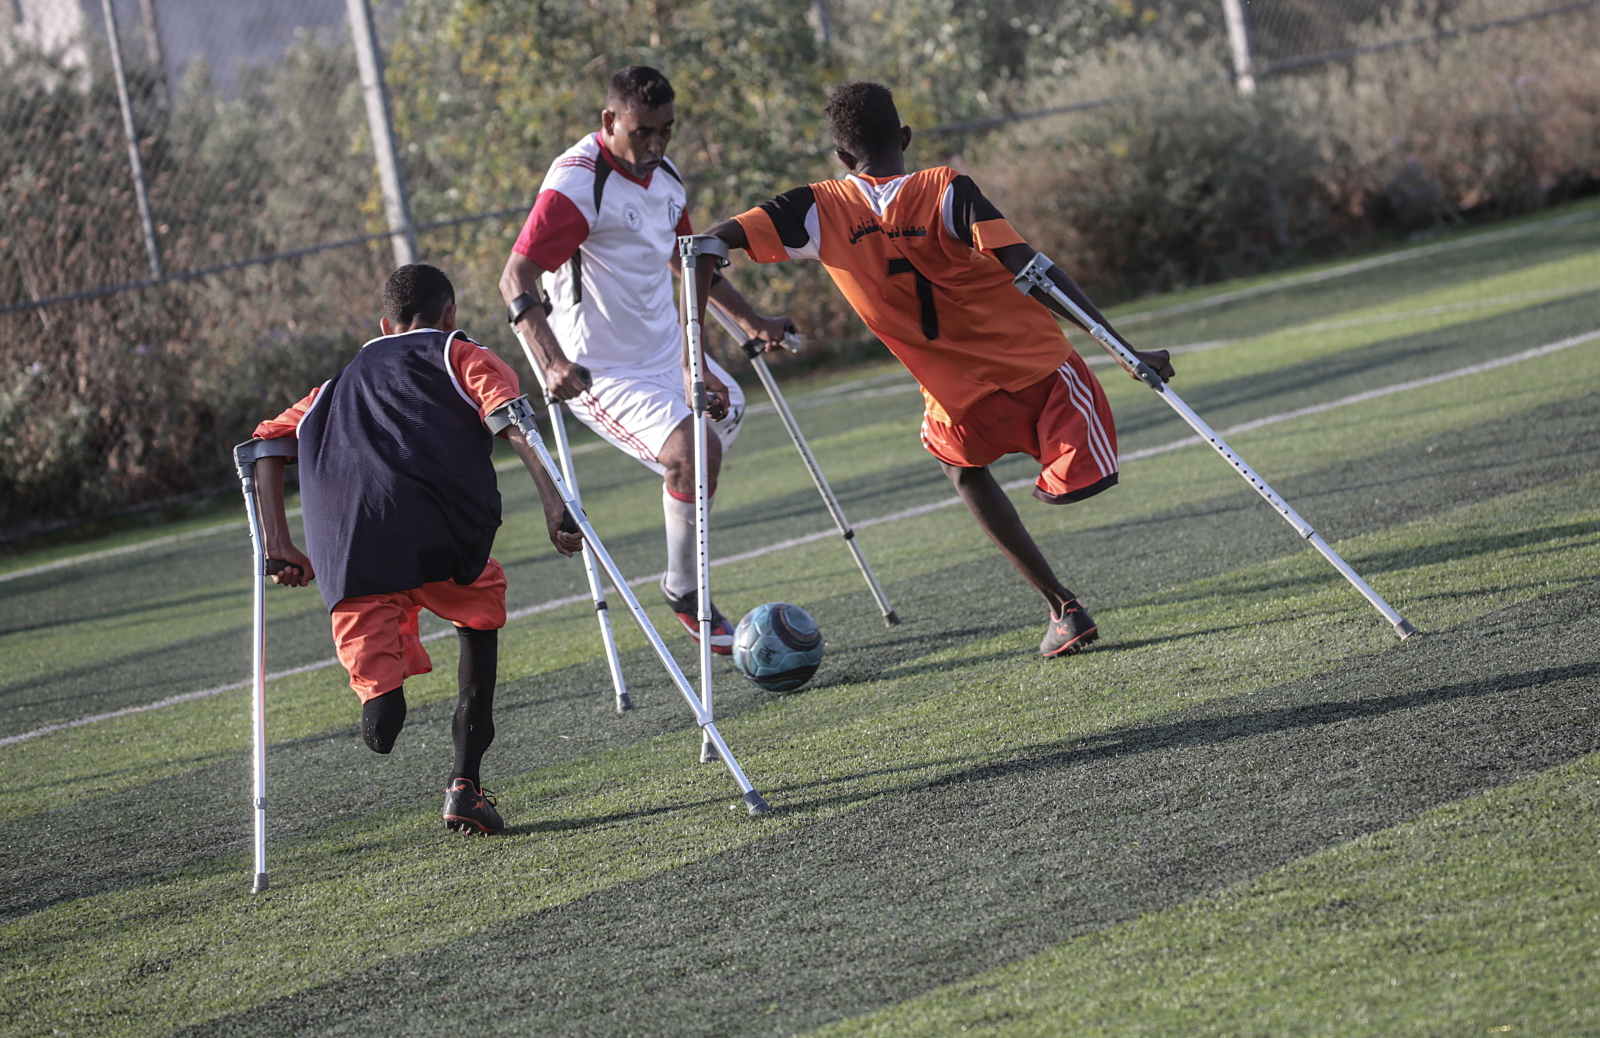 Piłkarze z niepełnosprawnością w Gazie. Fot. PAP/EPA/MOHAMMED SABER